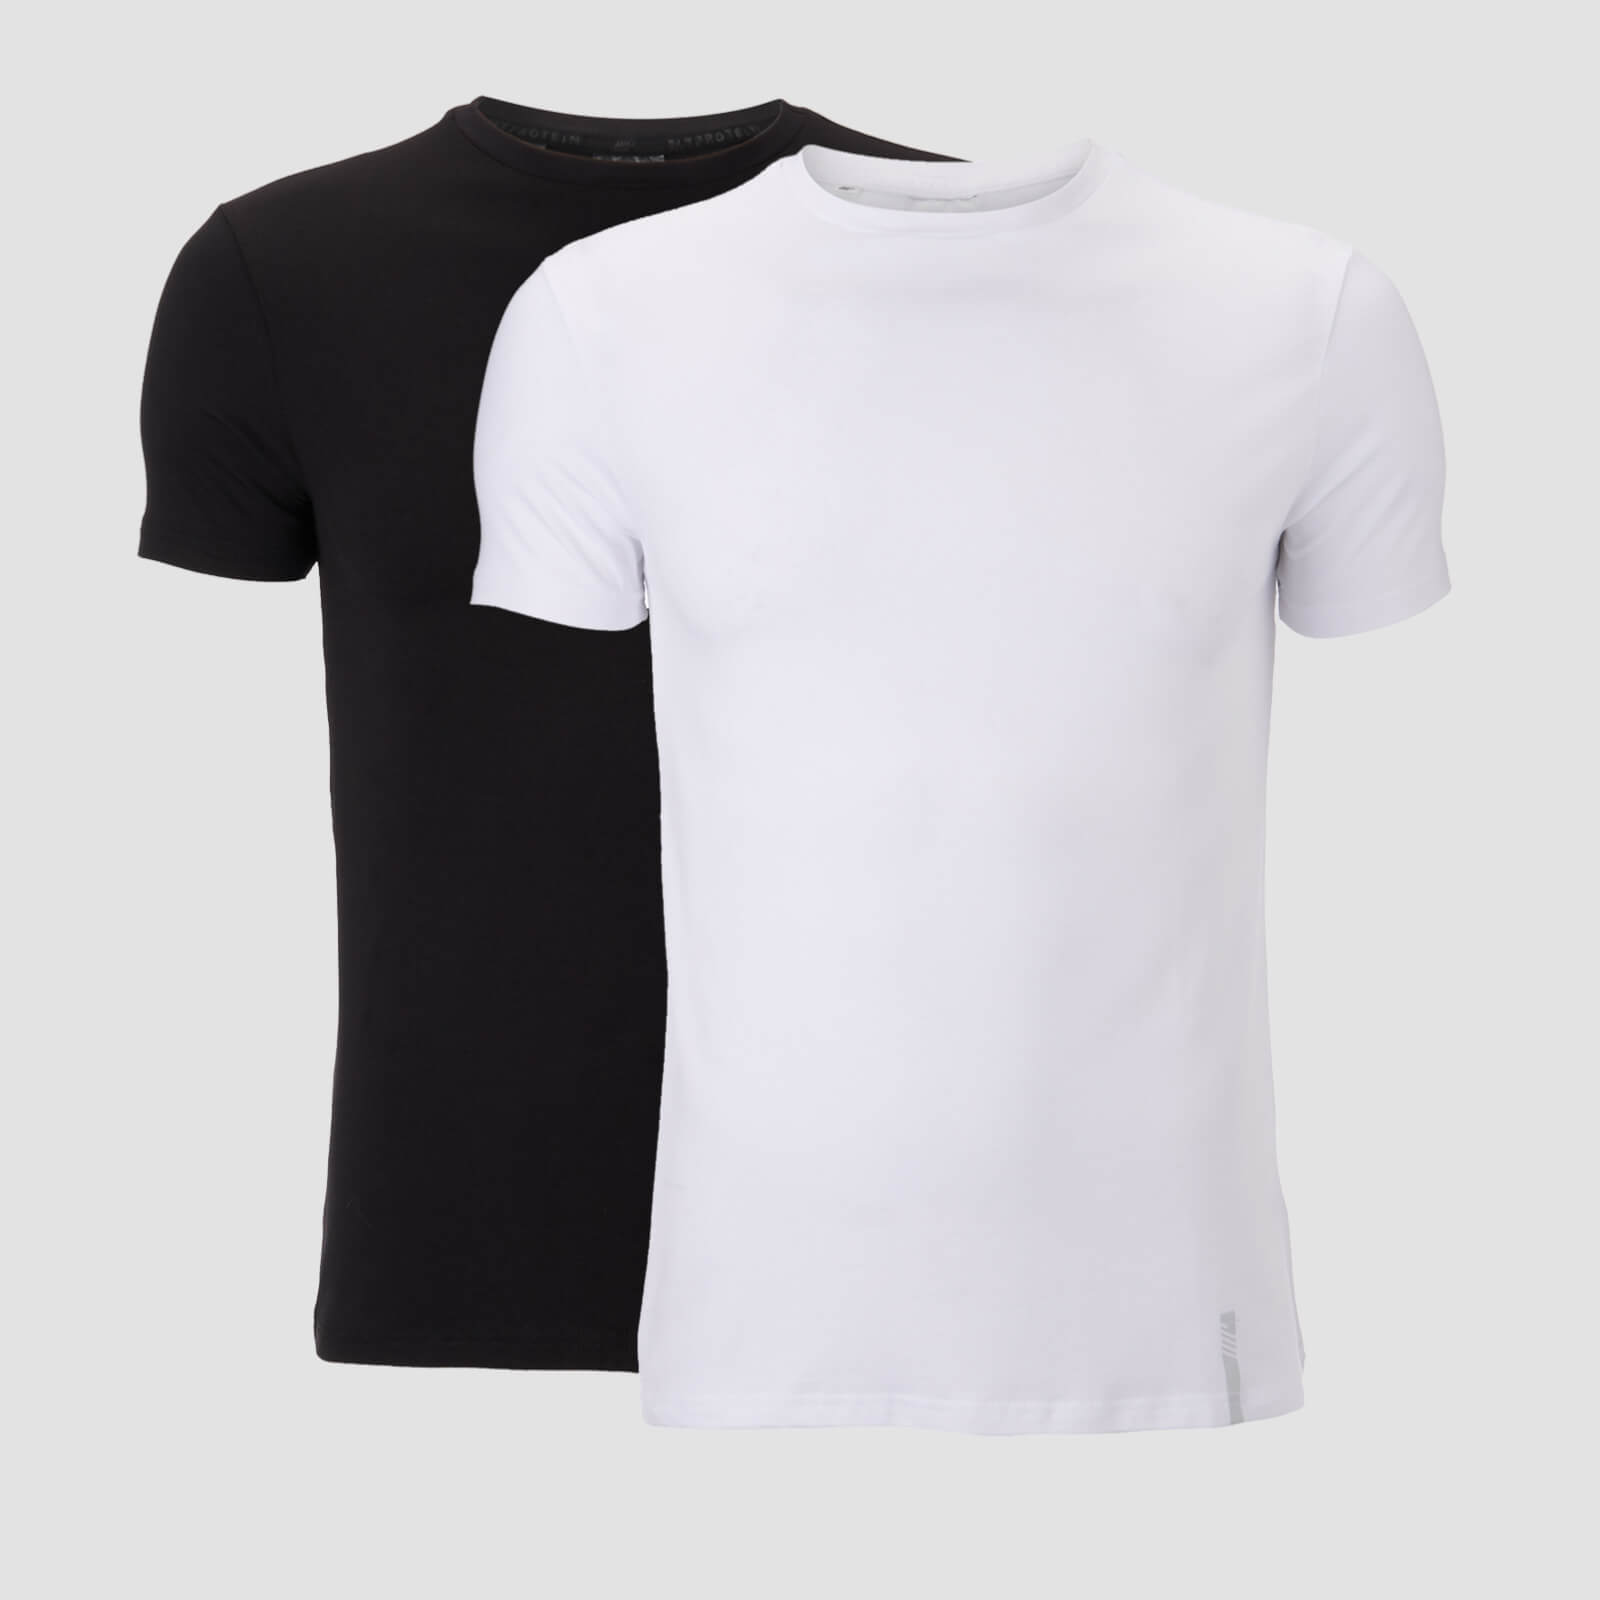 Luxe Classic Crew majica kratkih rukava (2 komada u pakiranju) - Crna/Bijela - M